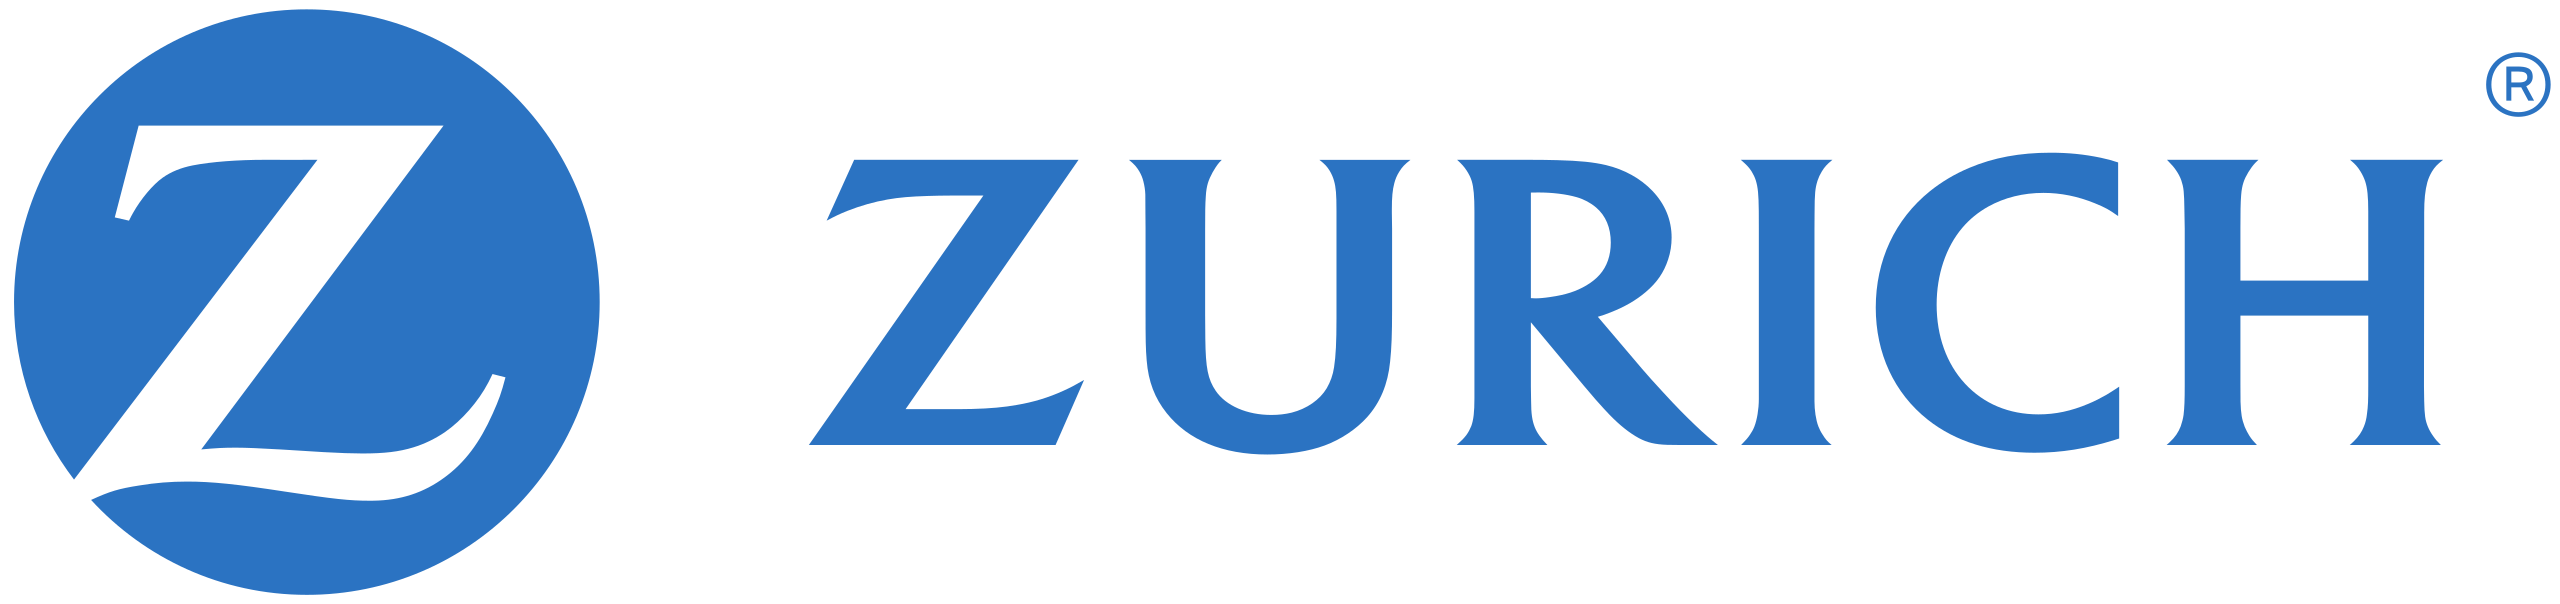 Zurich のロゴ